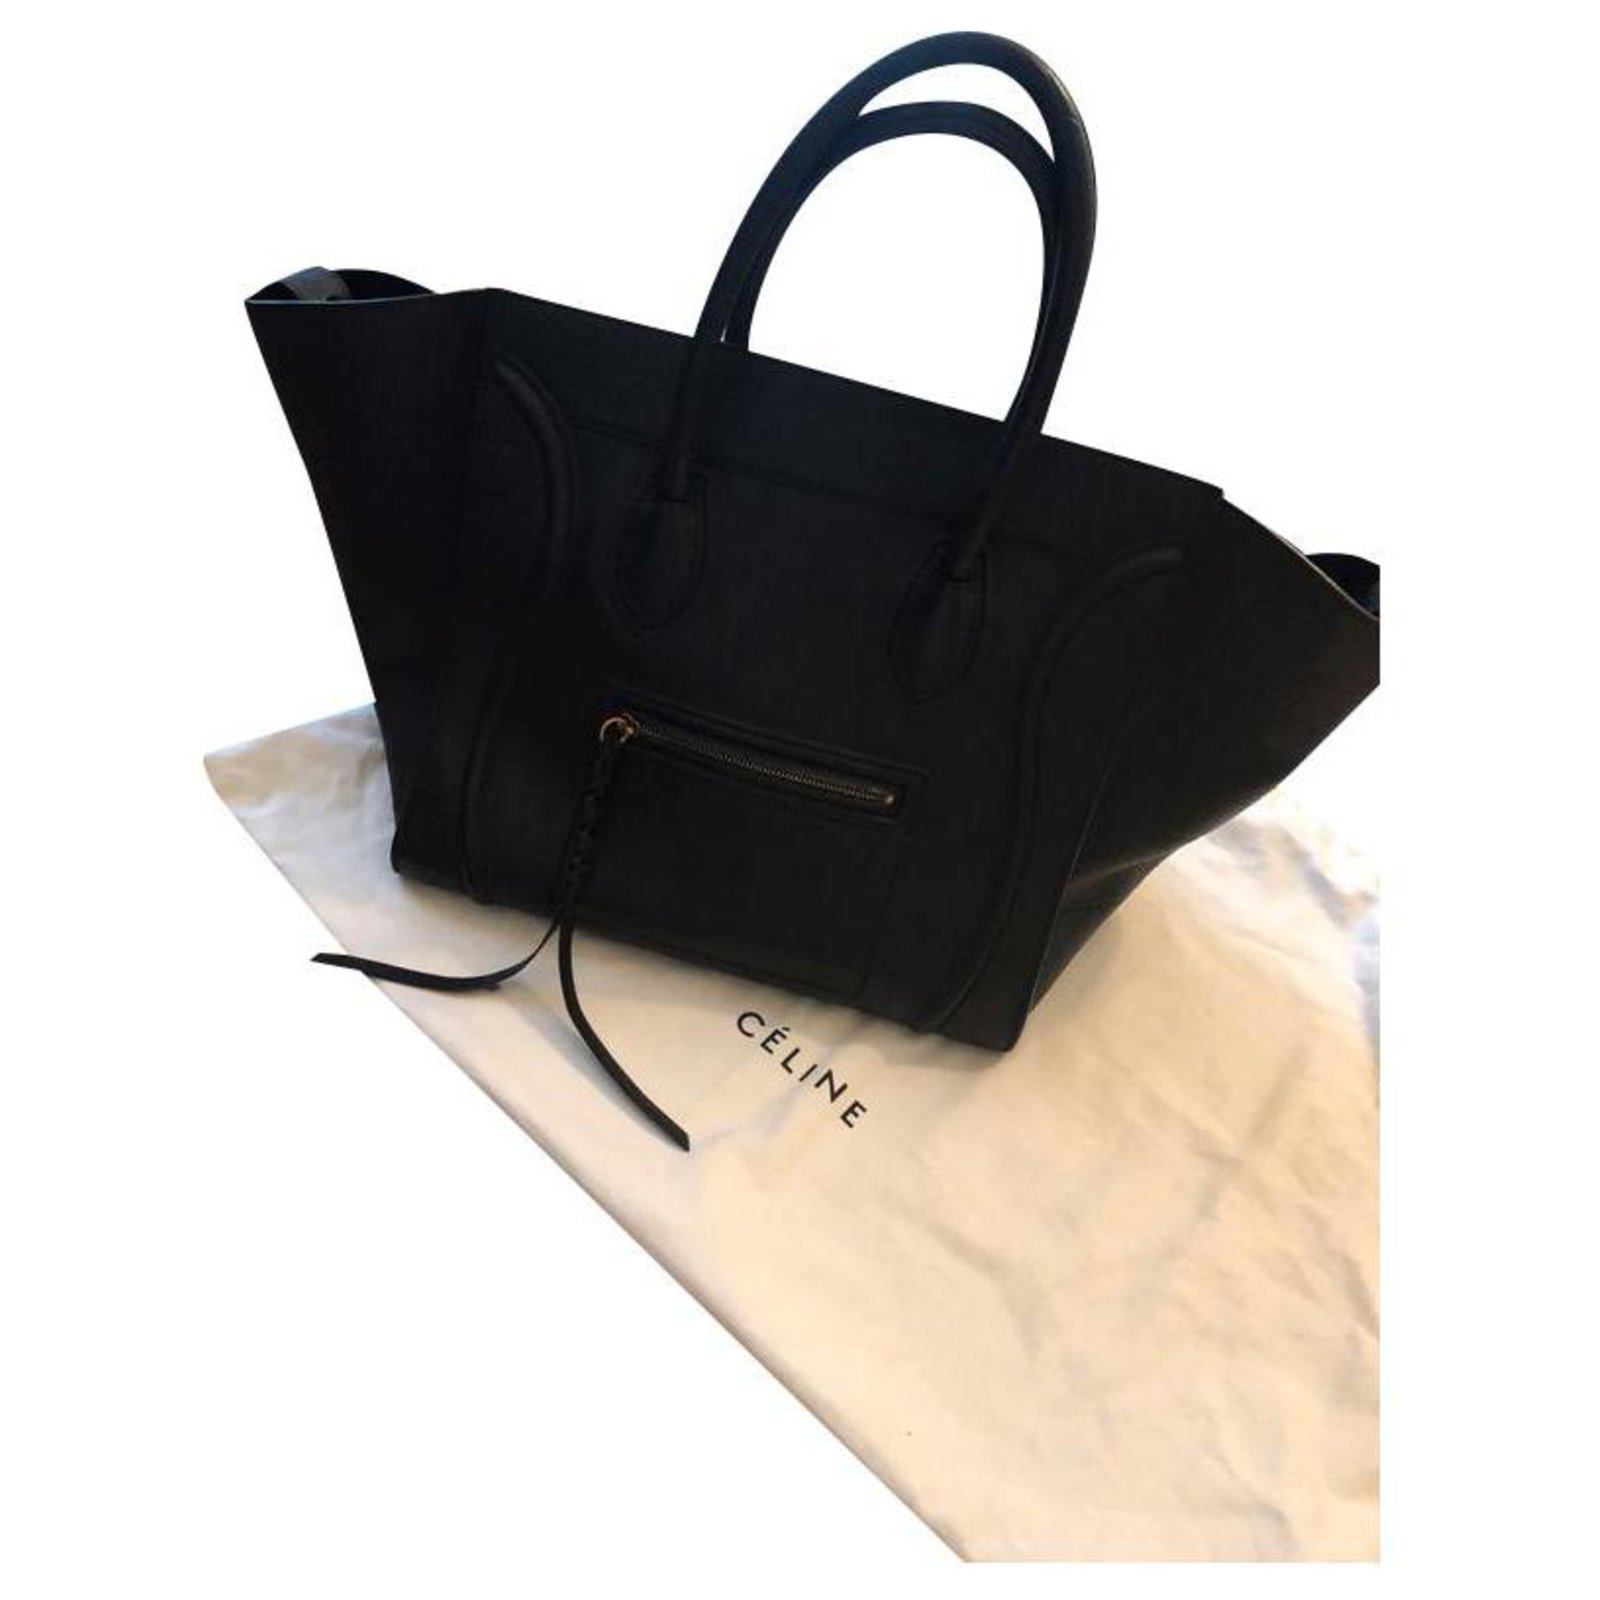 Celine Black Croc Embossed Leather Medium Phantom Luggage Tote Bag